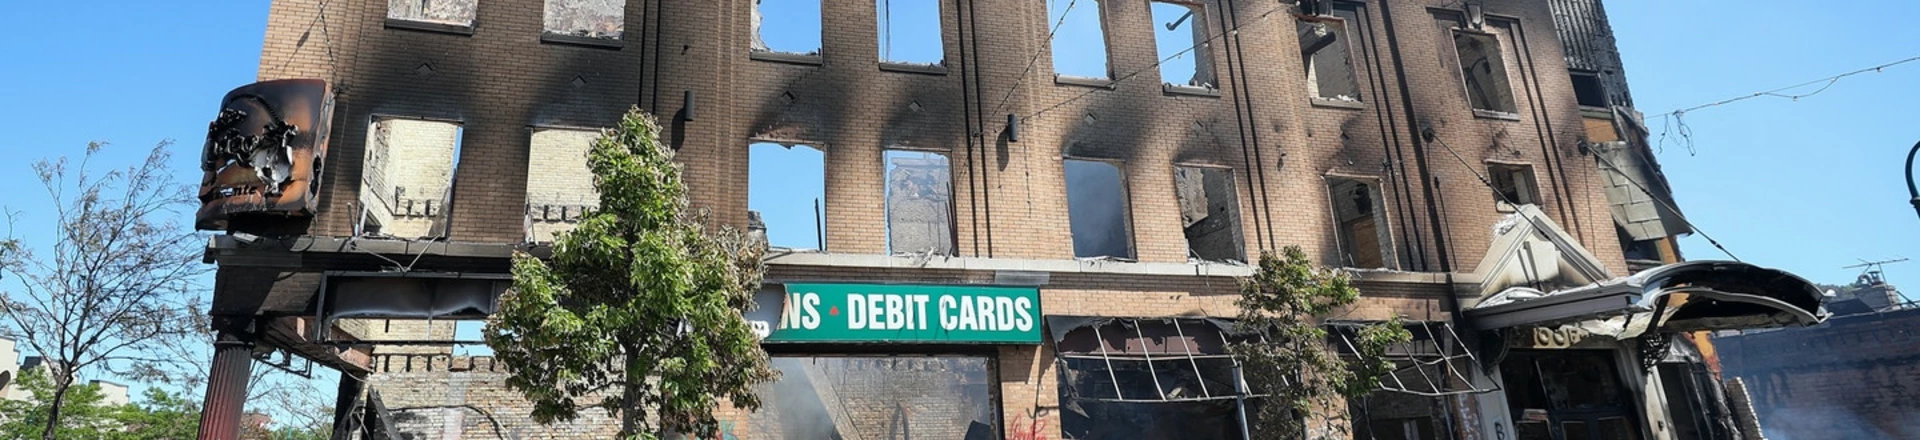 Vista de um prédio incendiado após os protestos pela morte de George Floyd, fotografado em 30 de maio de 2020, em Minneapolis.